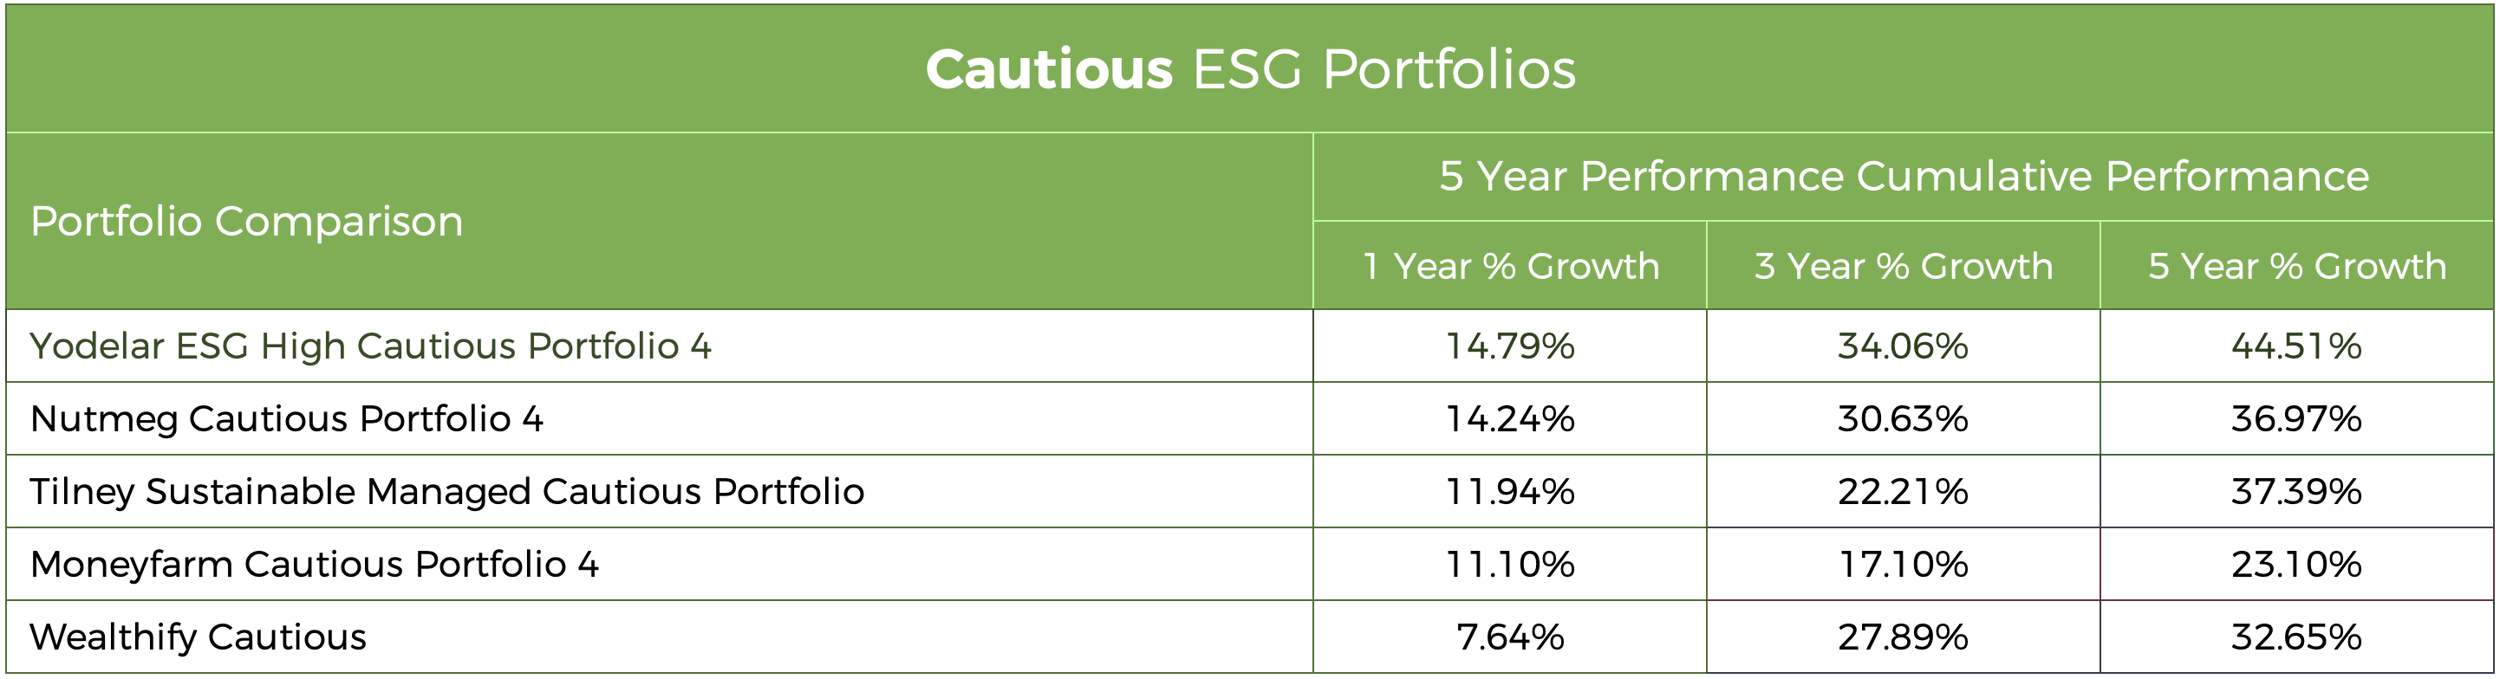 Cautious - ESG Portfolio Comparison